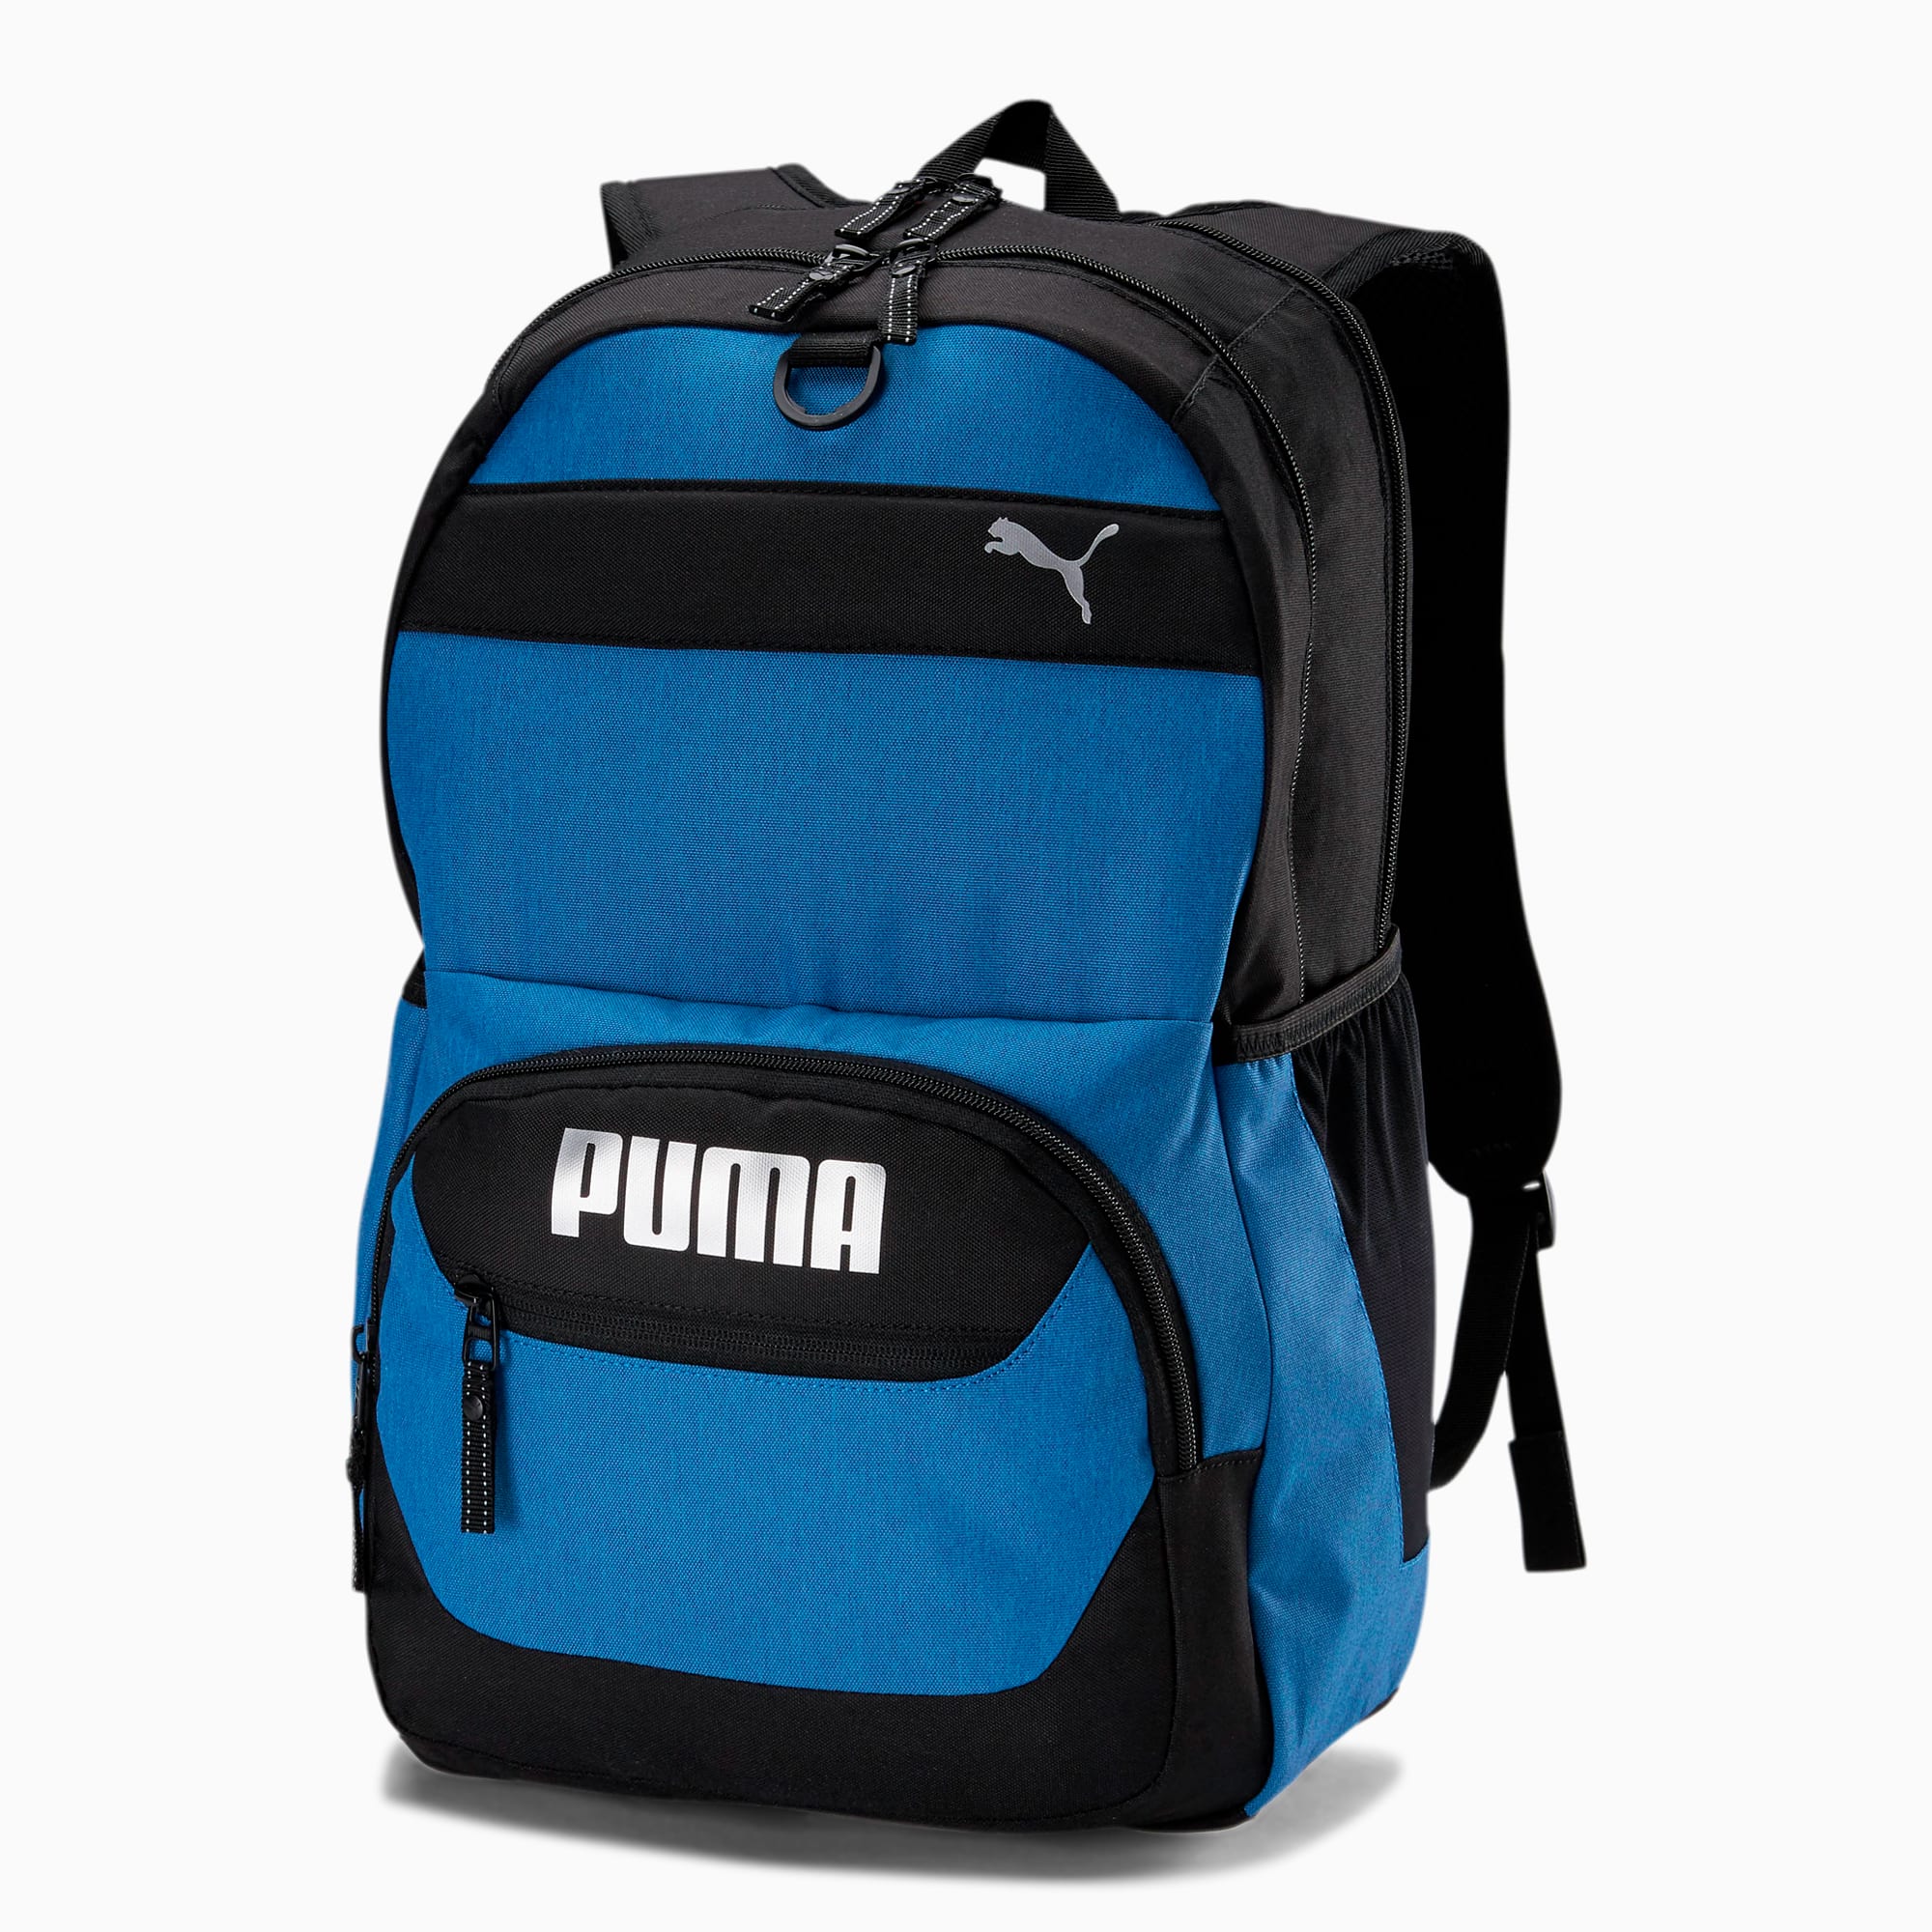 puma bags blue